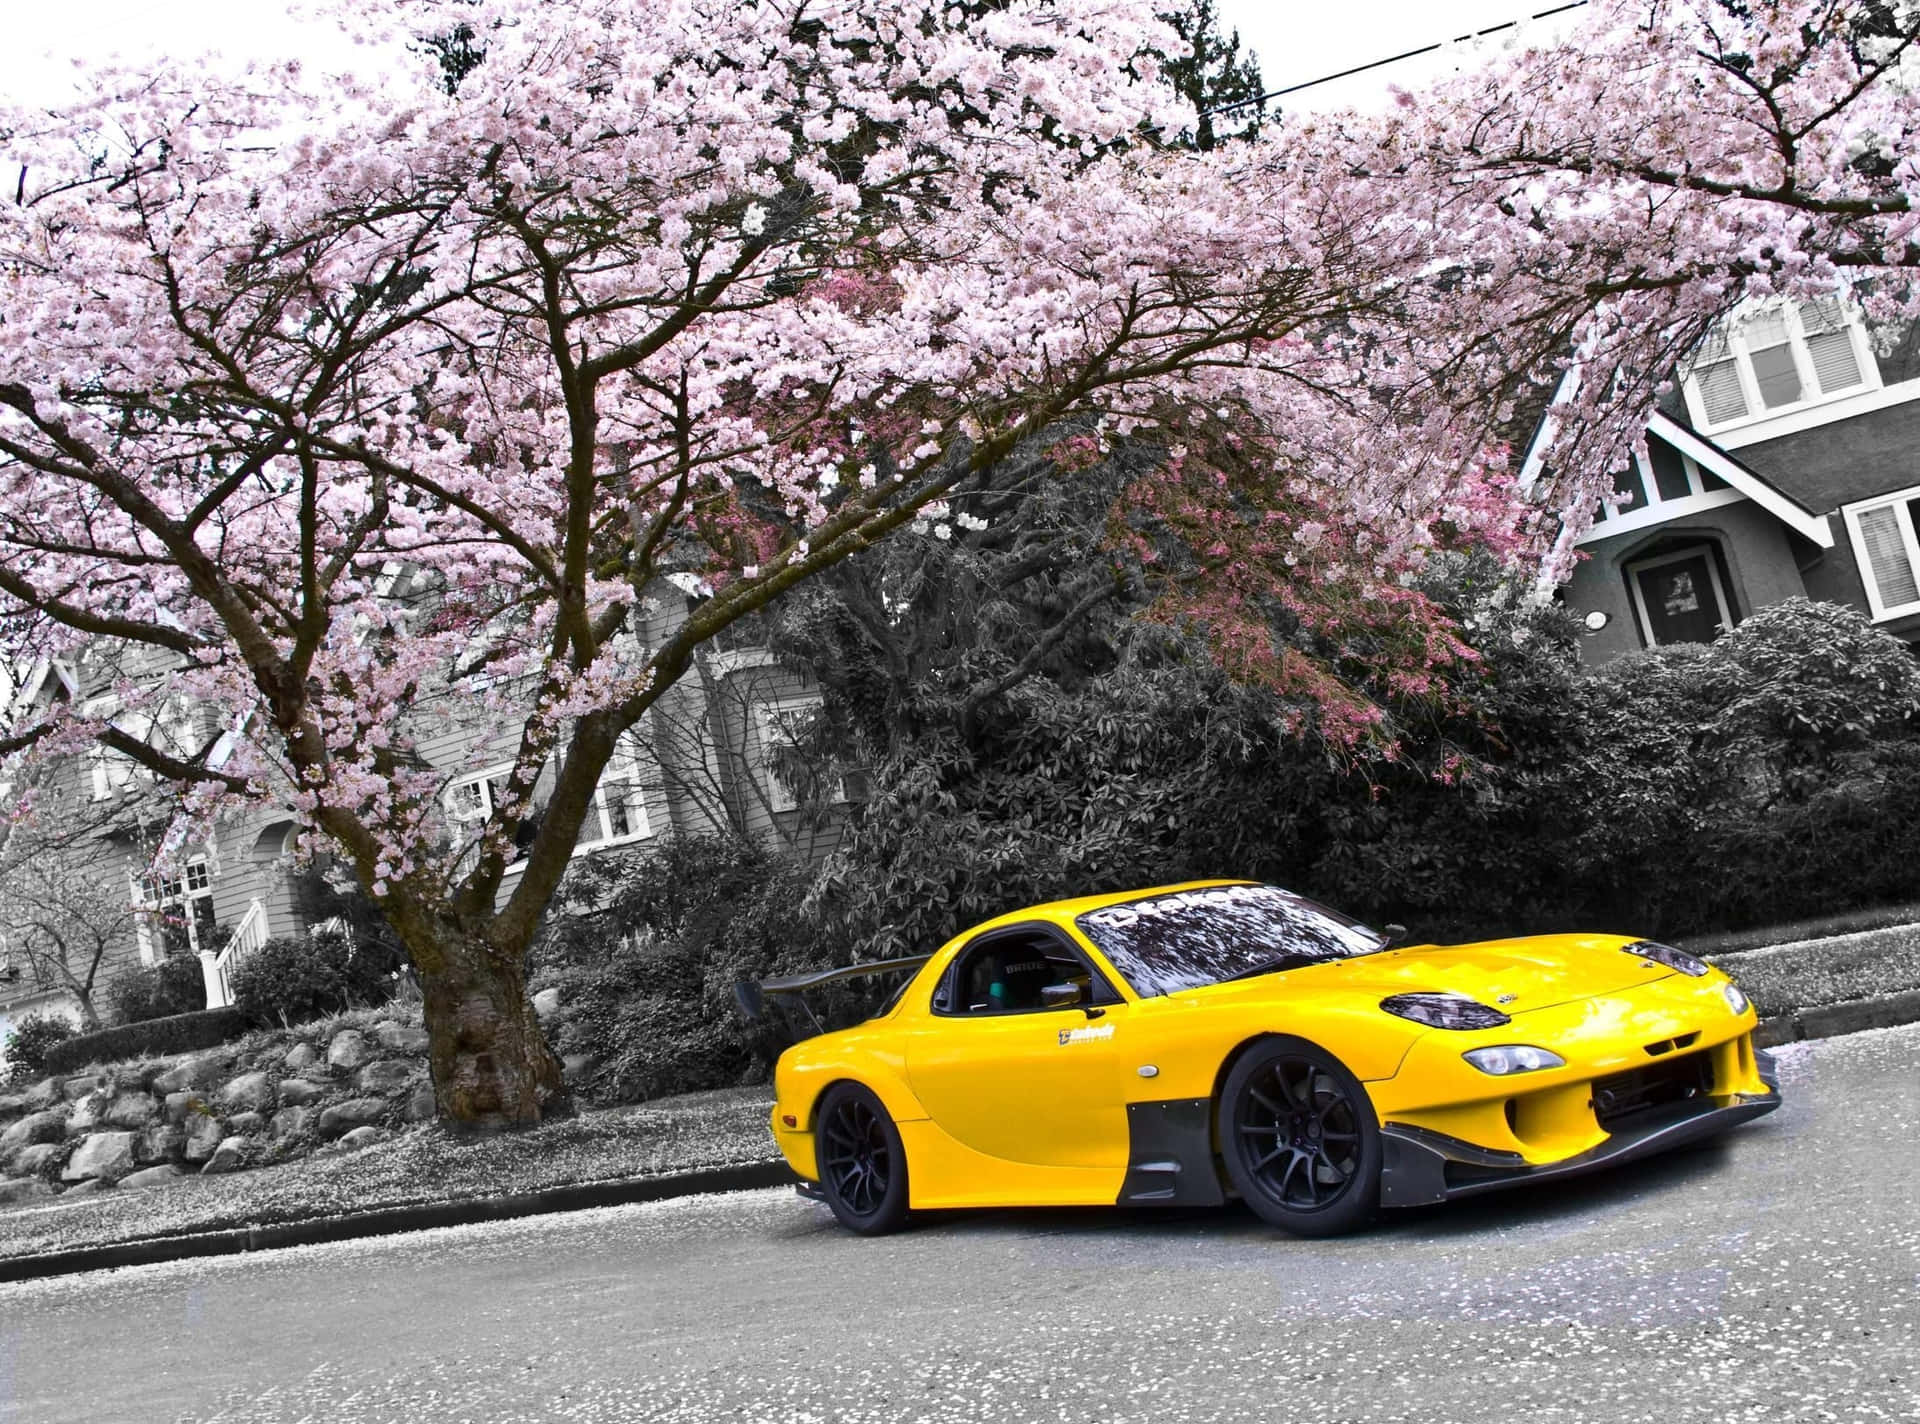 Gulmazda Rx 7 Under Sakura-trädet. Wallpaper